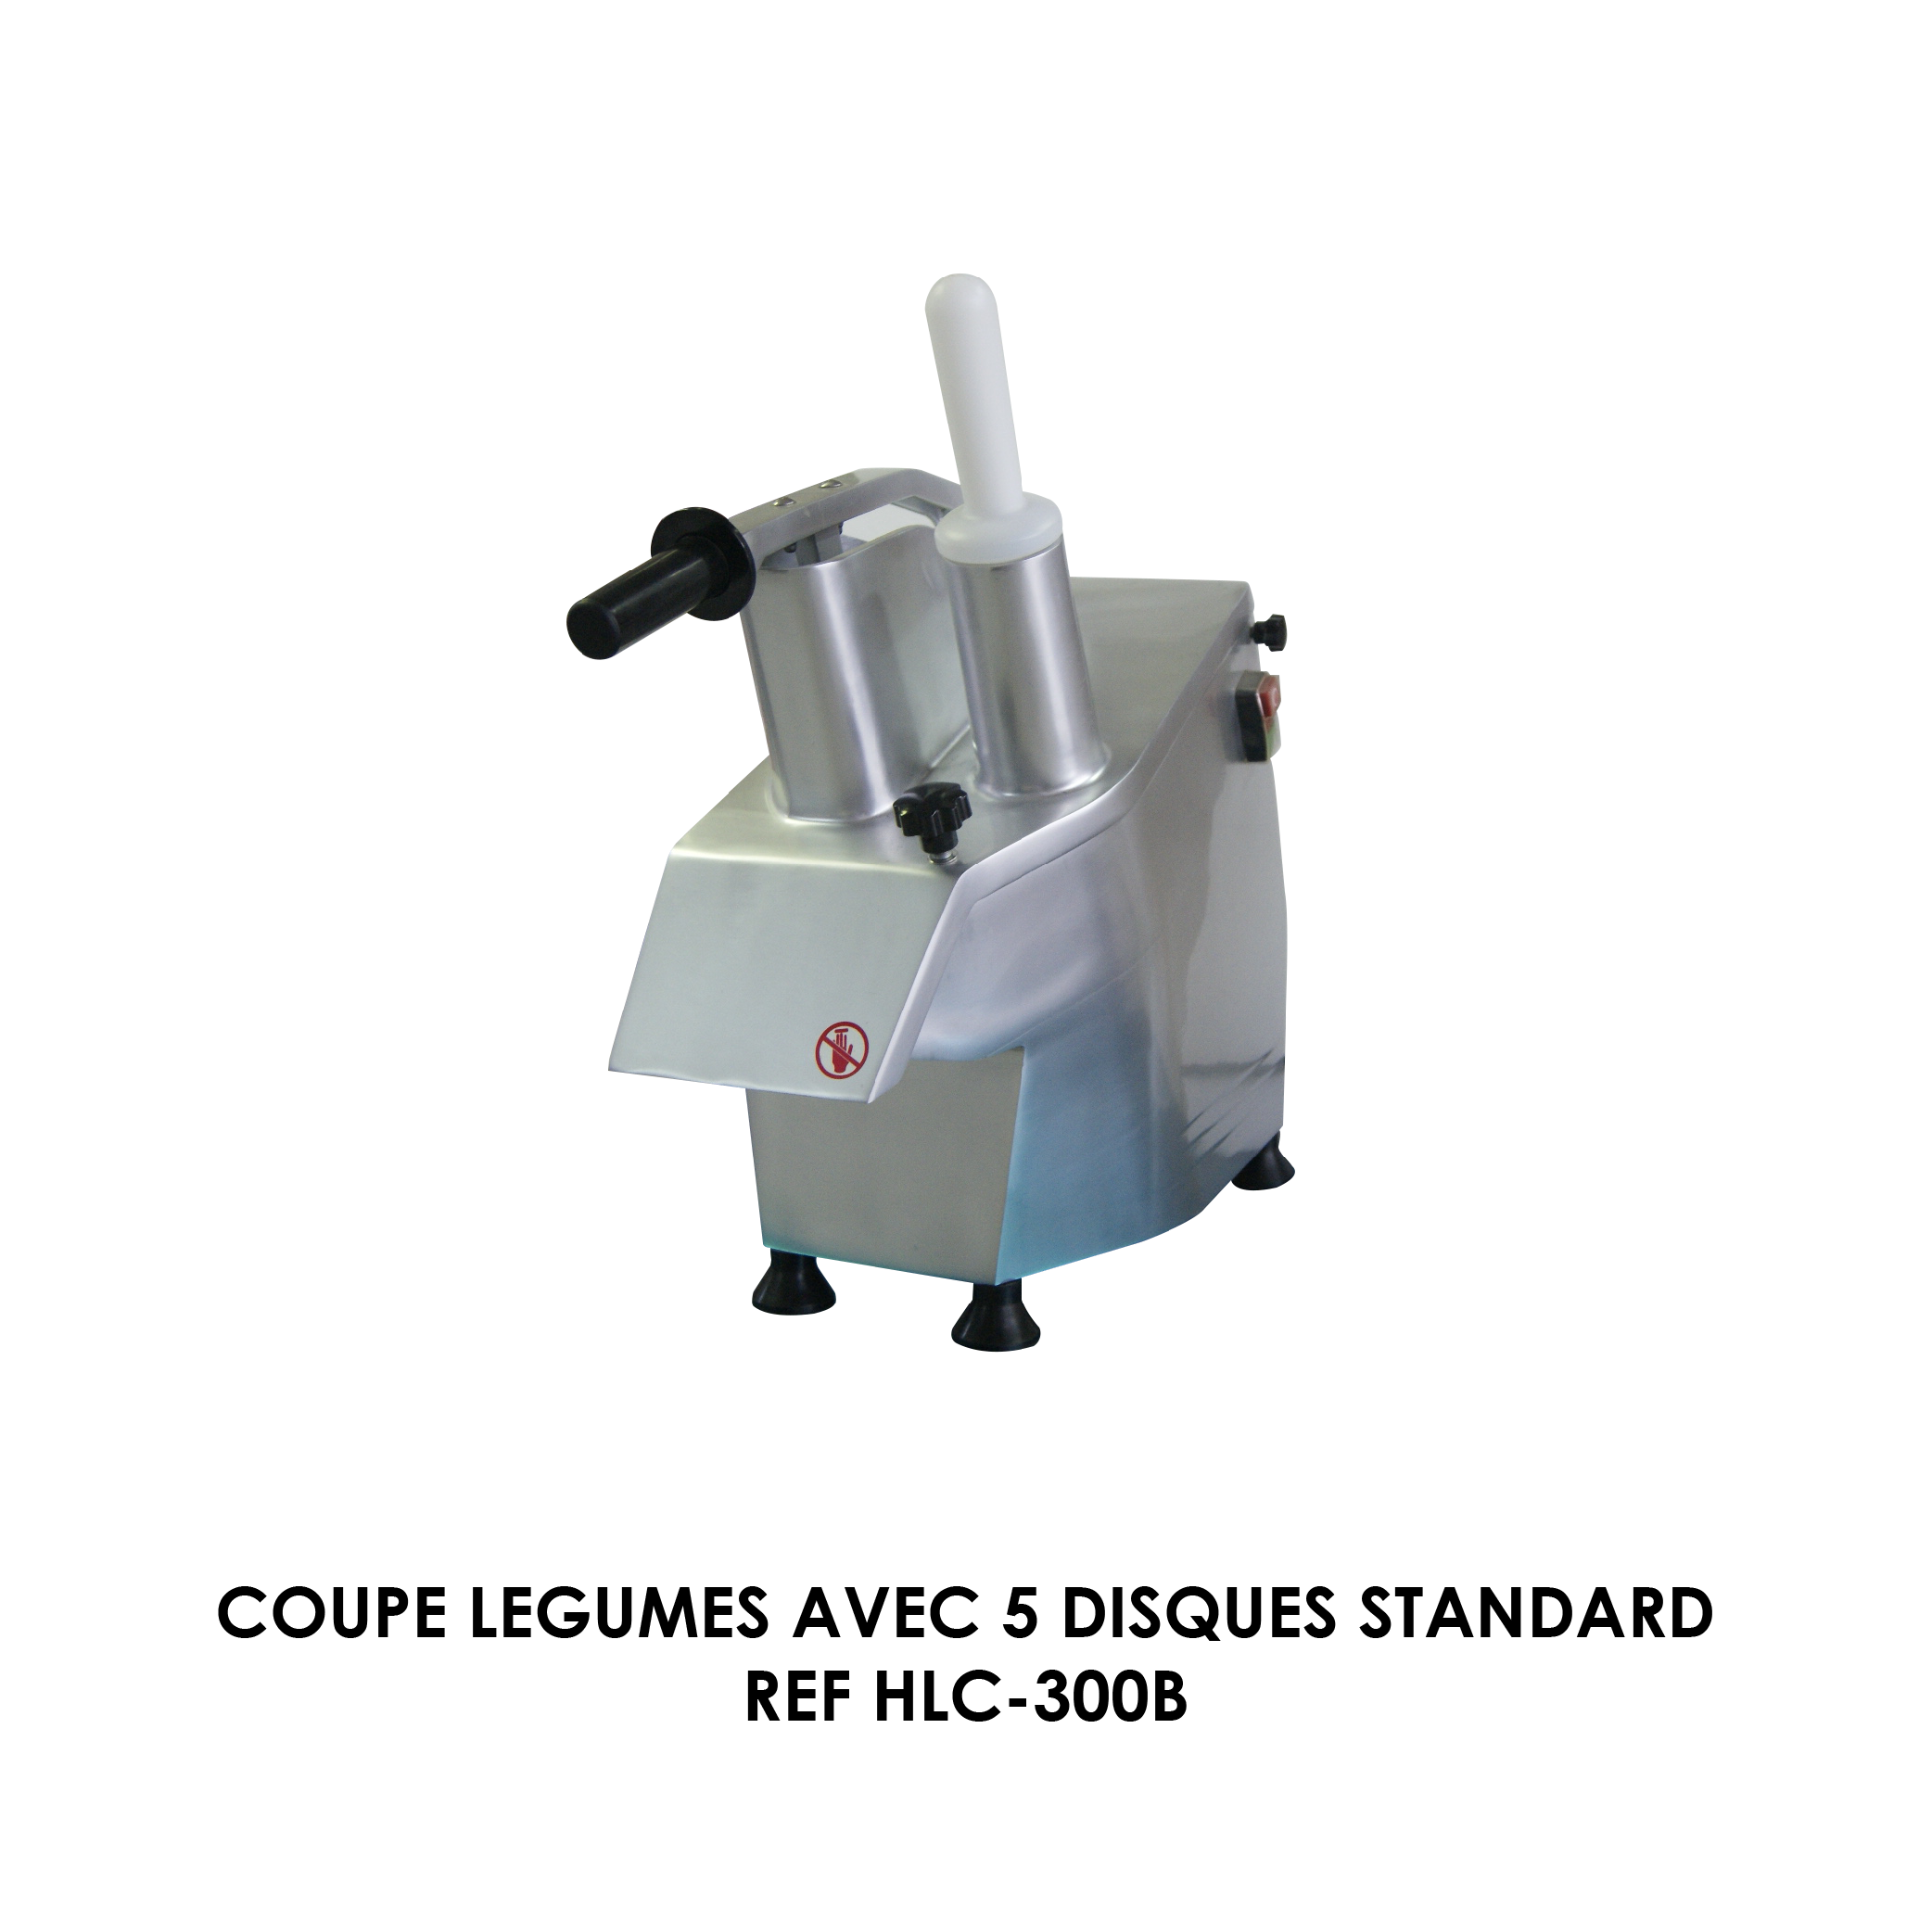 COUPE LEGUMES AVEC 5 DISQUES STANDARD REF HLC-300B